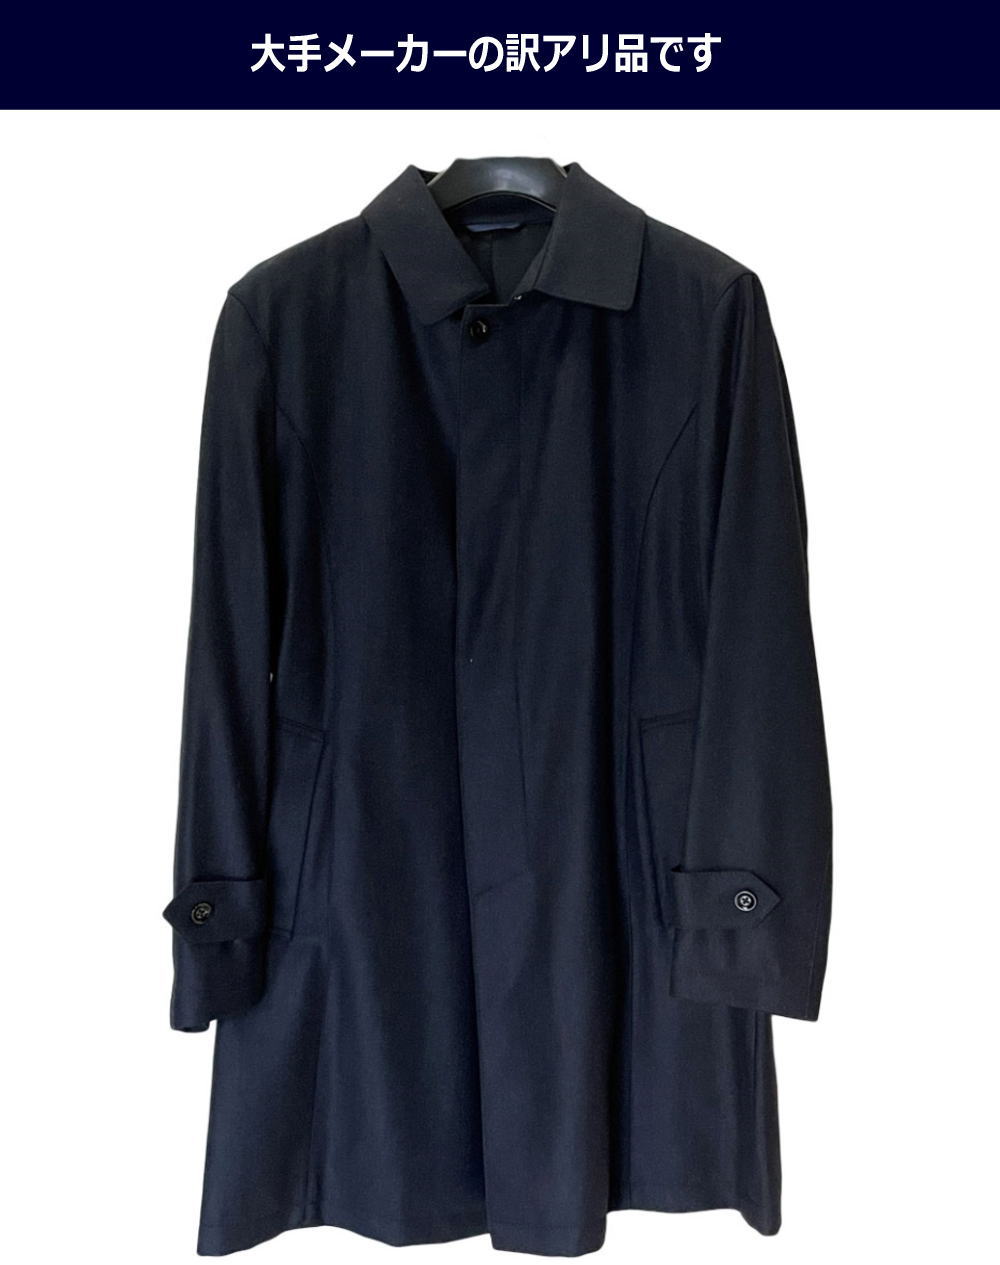 B товар бизнес пальто мужской пальто пальто с отложным воротником большой размер BIG размер S M L LL 3L 4L 5L 6L чёрный чай черный Brown 